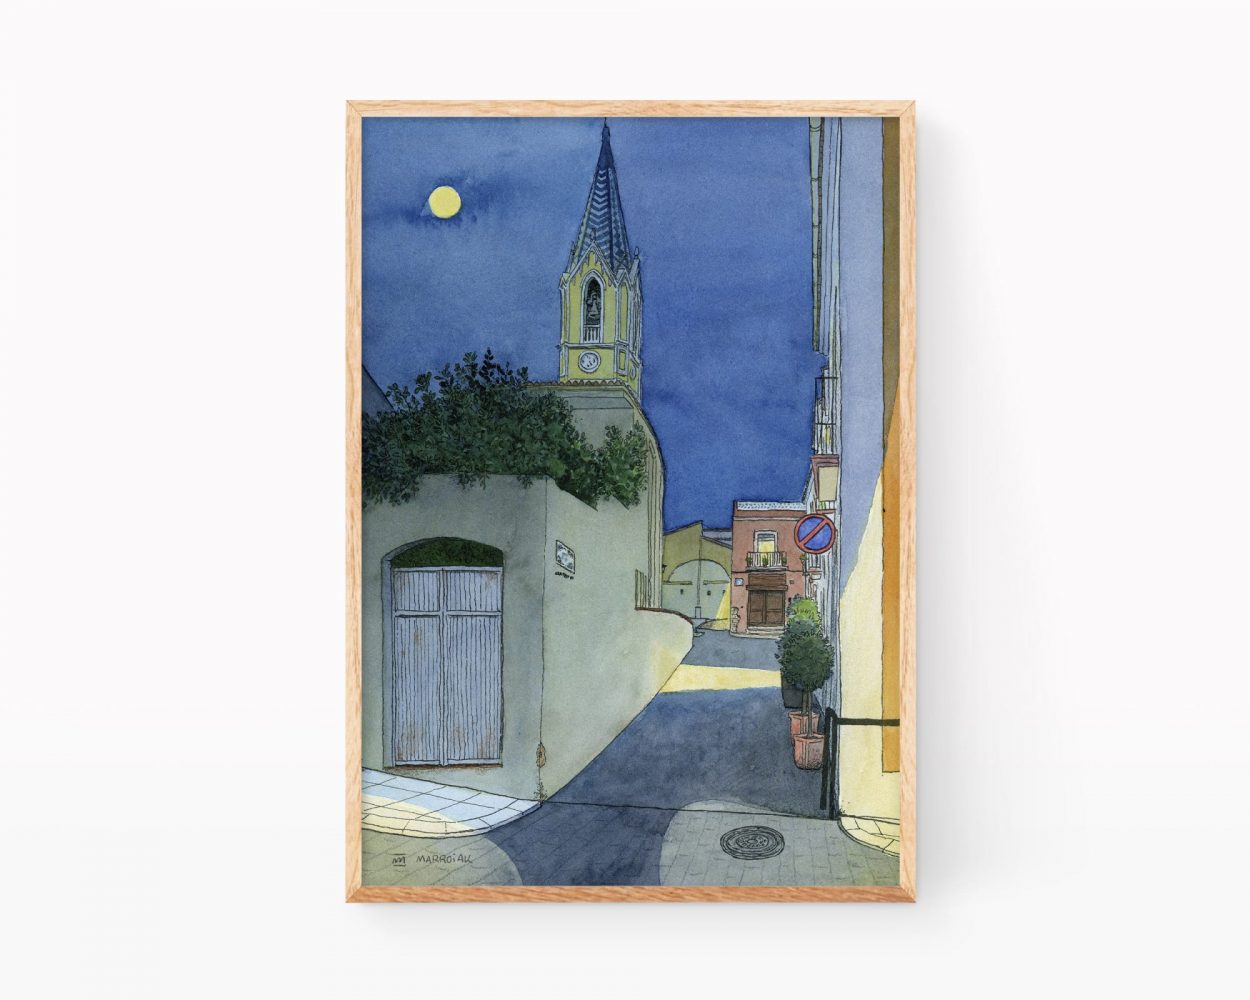 Dibujos y fotos de pueblos de Valencia. Lámina con ilustración de una calle y la iglesia de Palma de Gandía, municipio de la Safor de noche